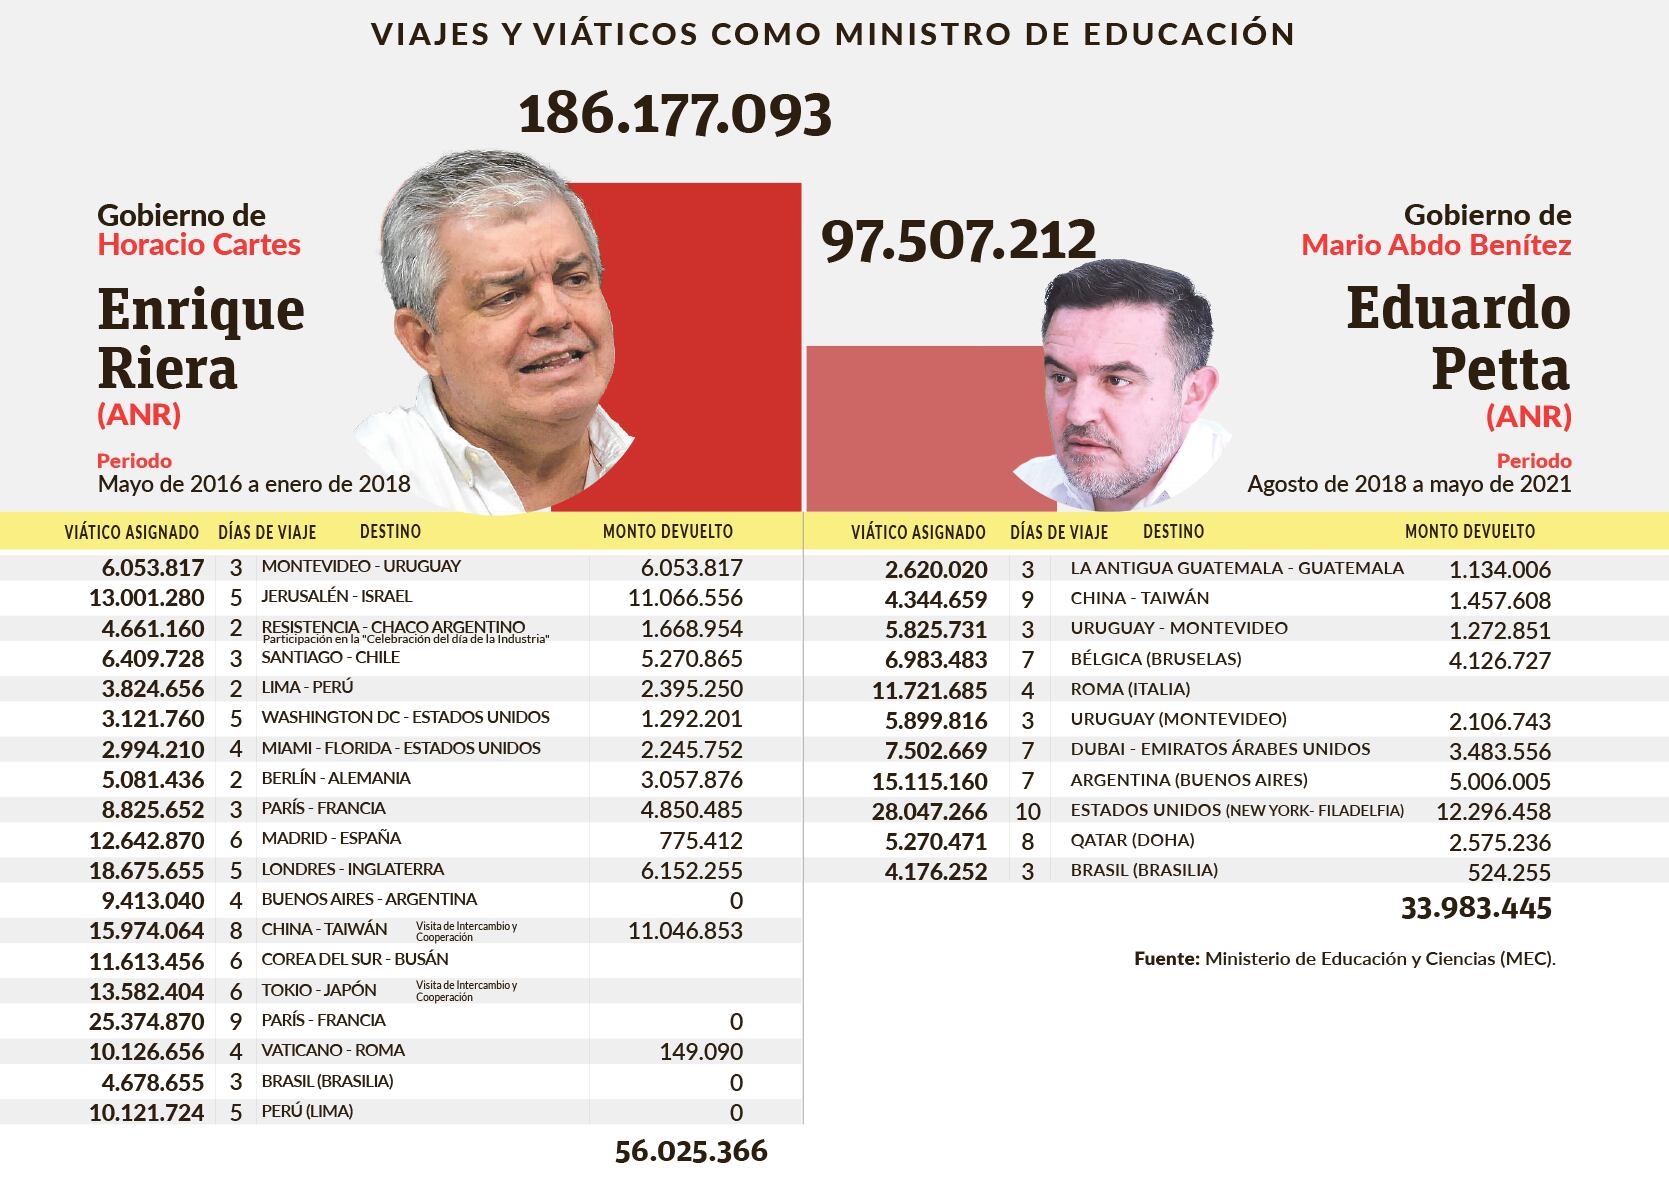 Enrique Riera es el ministro de Educación que más viajó y más gastó en viáticos en los últimos diez años. Eduardo Petta es el que más viajó y gastó en el Gobierno actual.